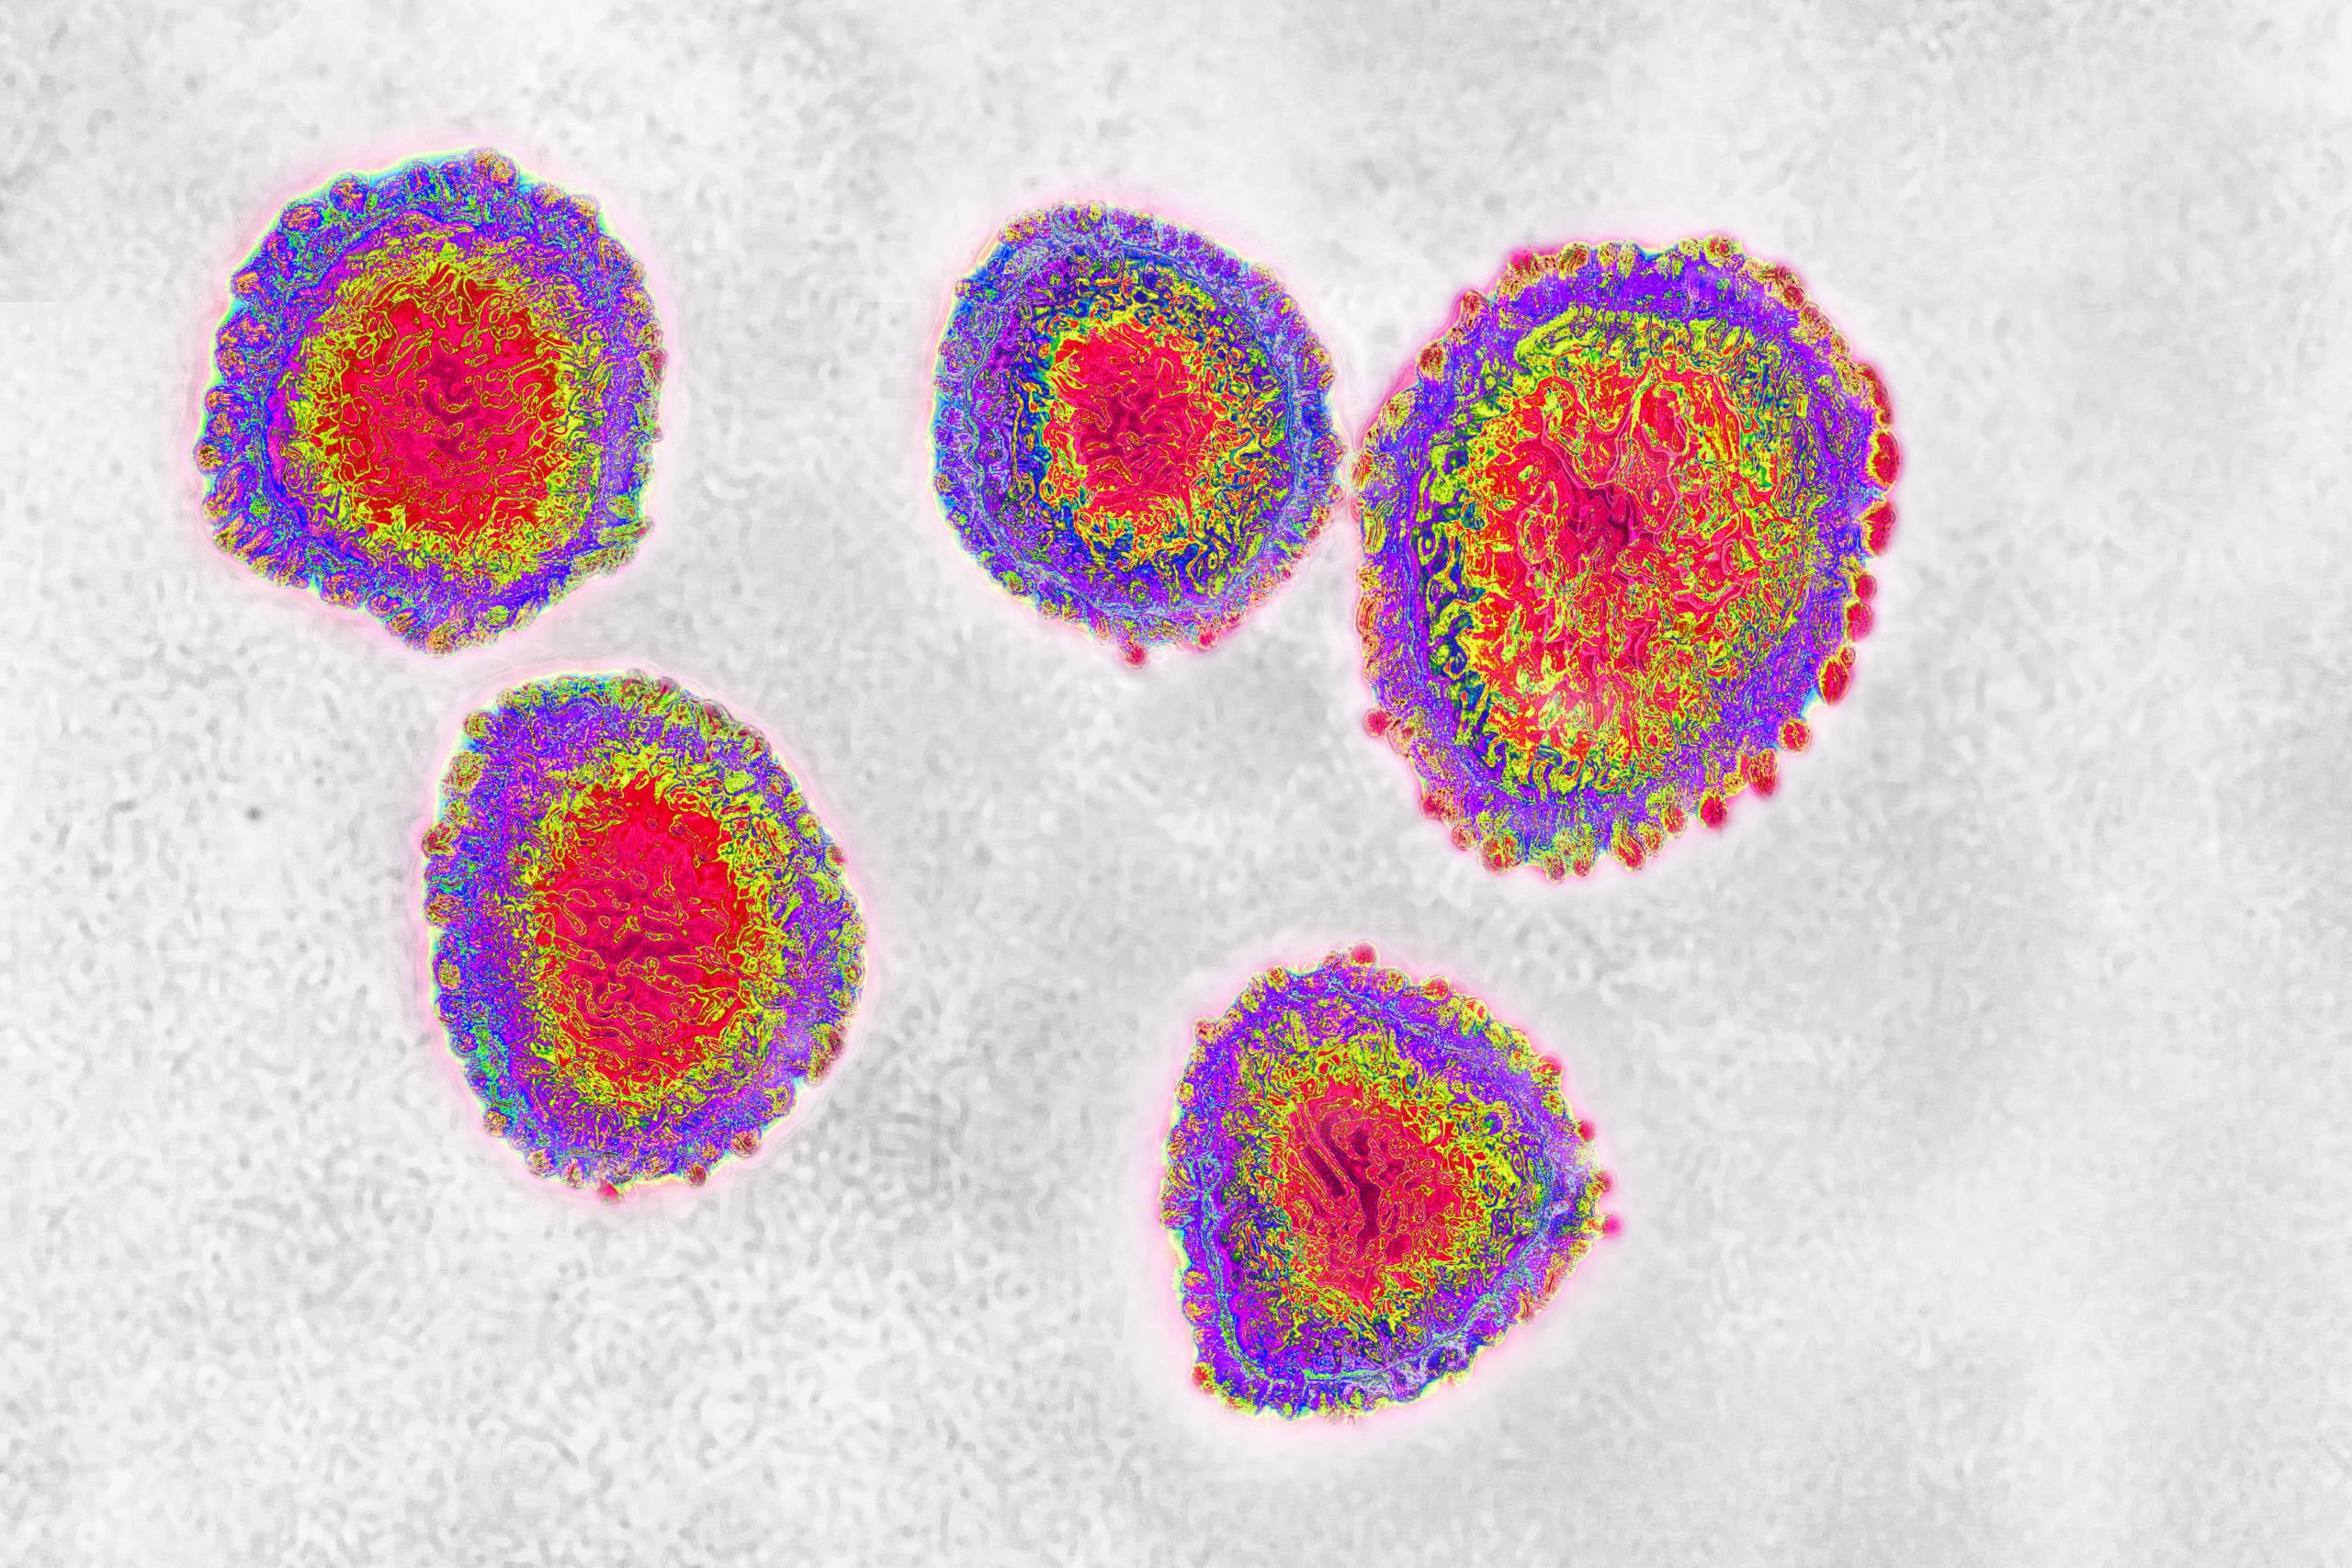 Coronavirus under microscope.